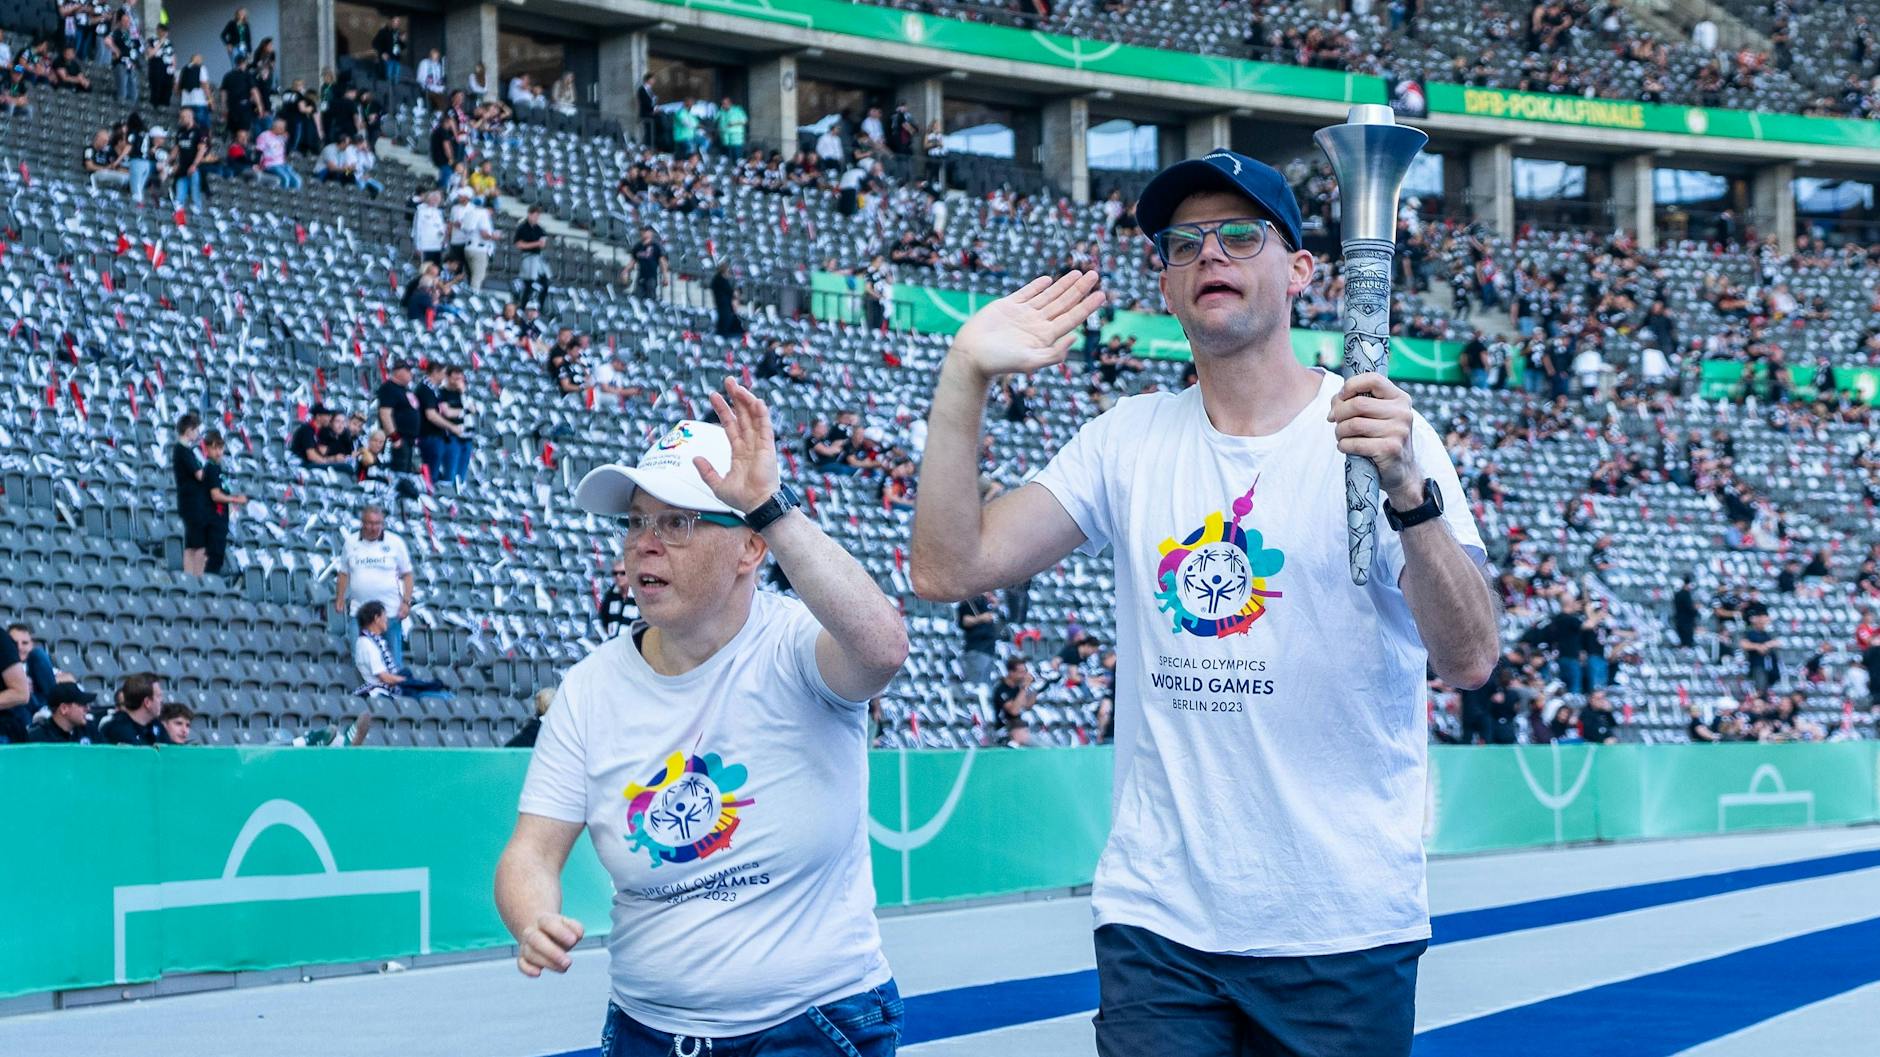 Zwei Staffelläufer werben am Wochenende für die Special Olympics World Games in Berlin beim DFB-Pokalfinale im Olympiastadion.